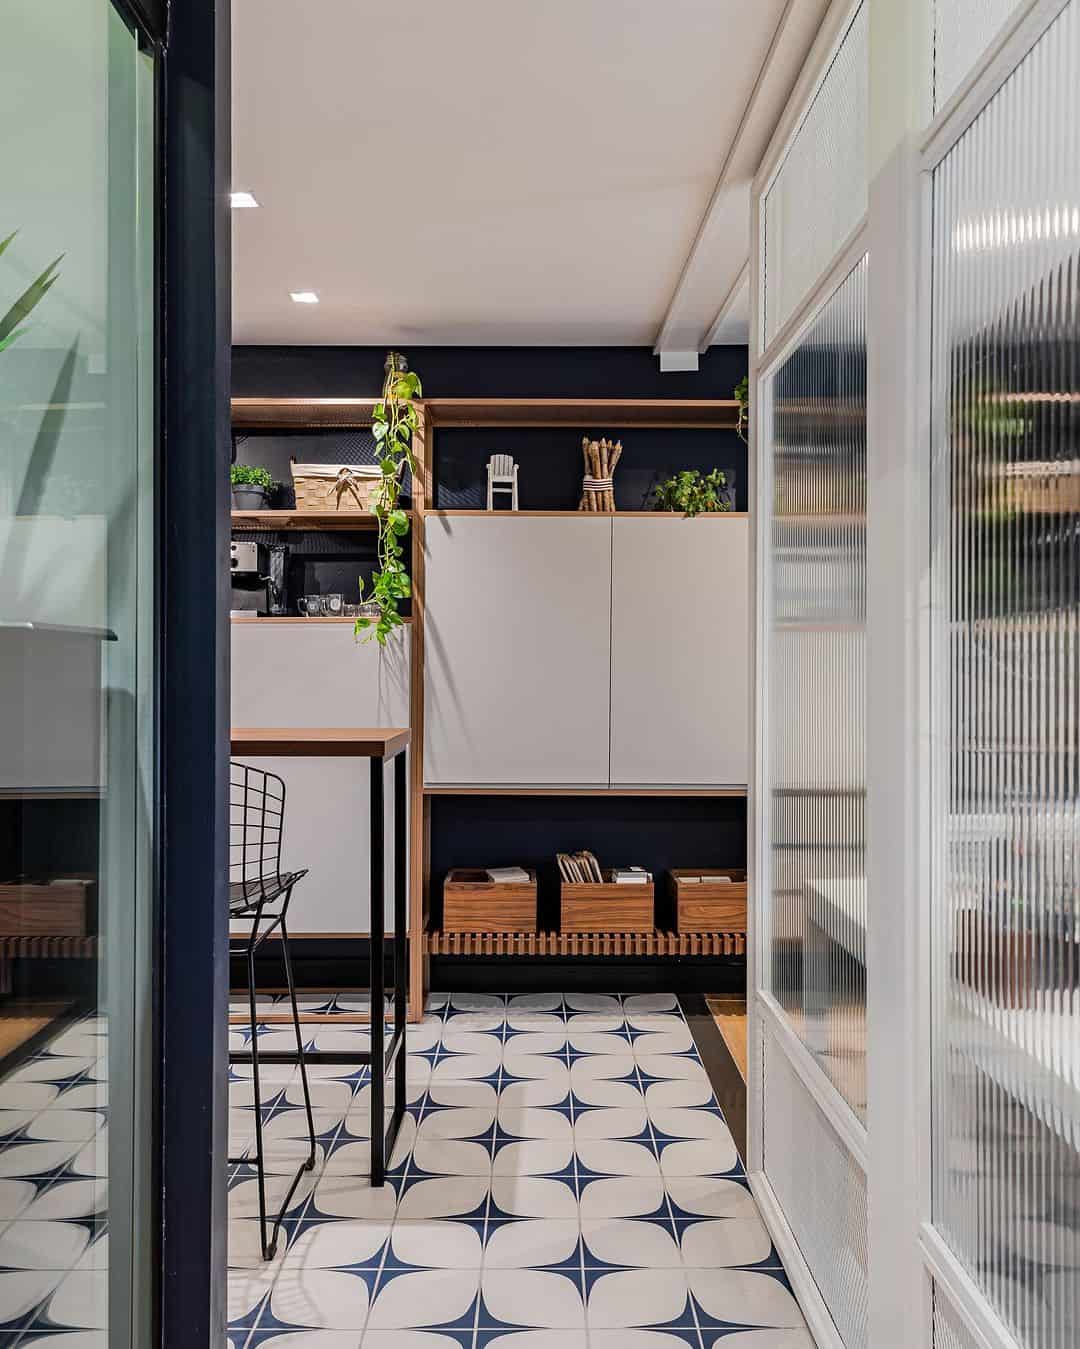 piso de cozinha com azulejo decorado